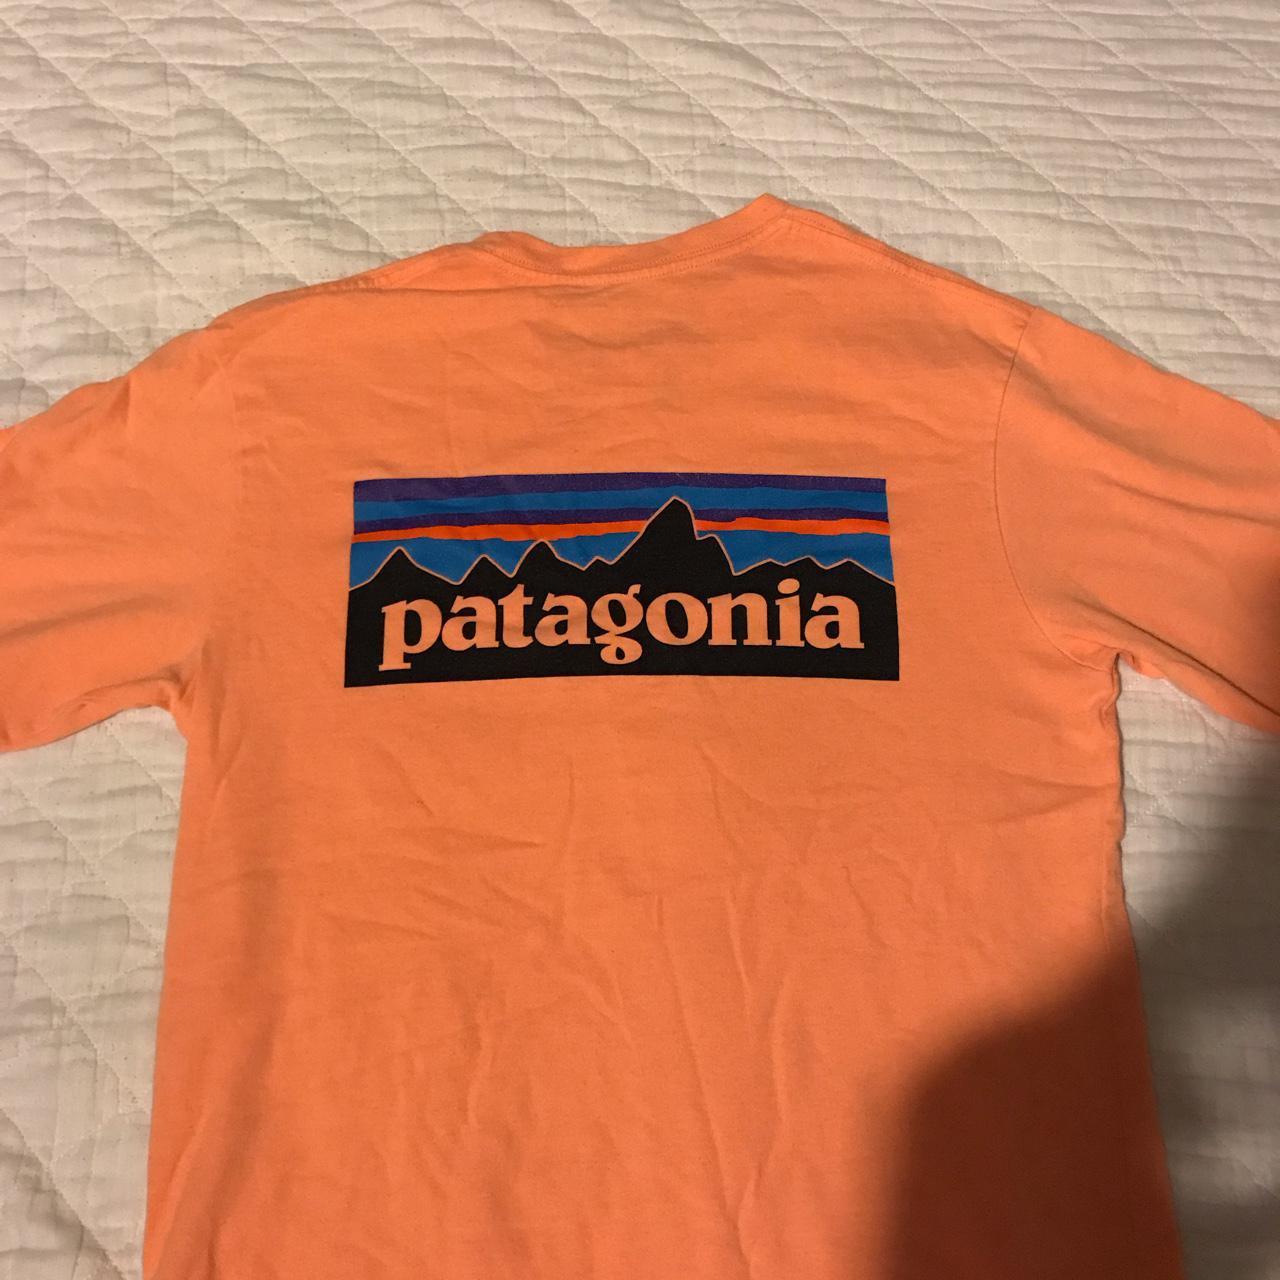 Patagonia t shirt in orange Basic Patagonia t... - Depop